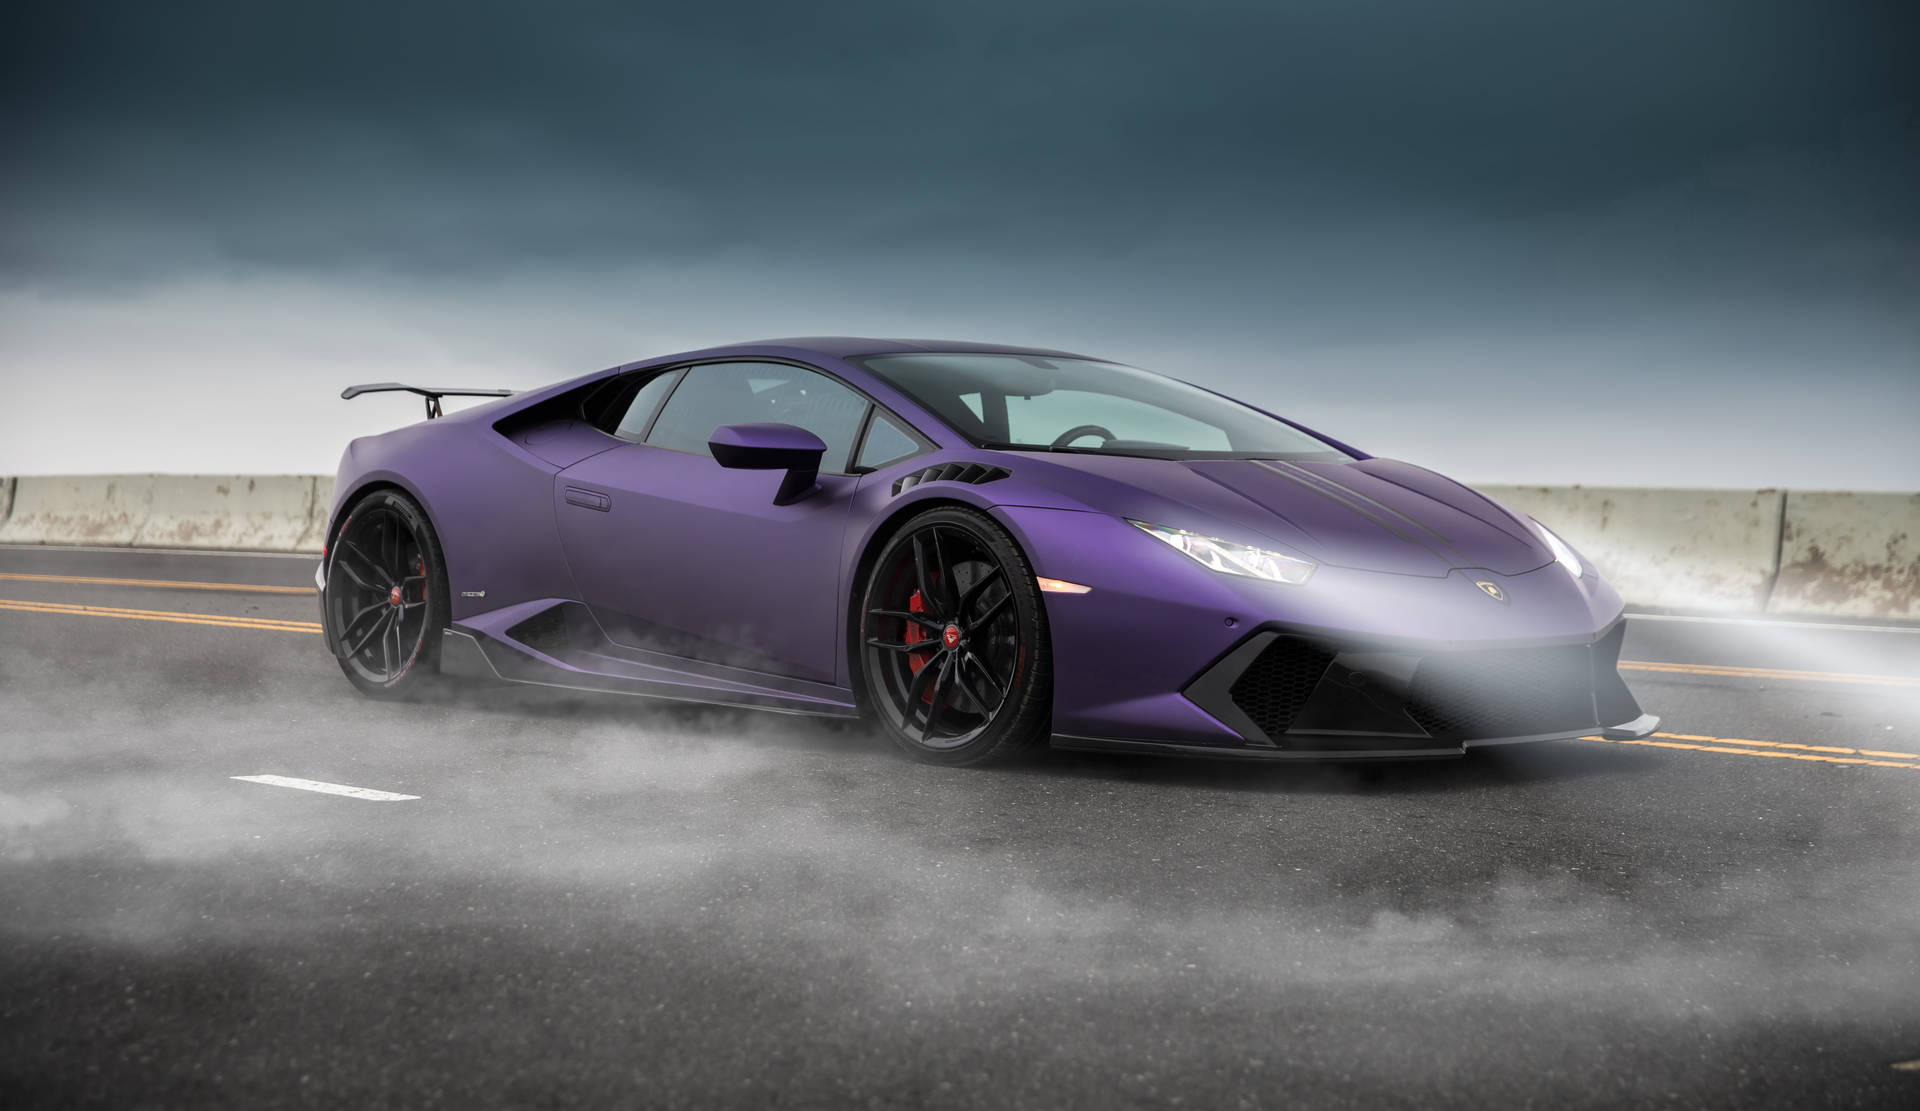 Powerful Elegance - Lamborghini In 4k Wallpaper